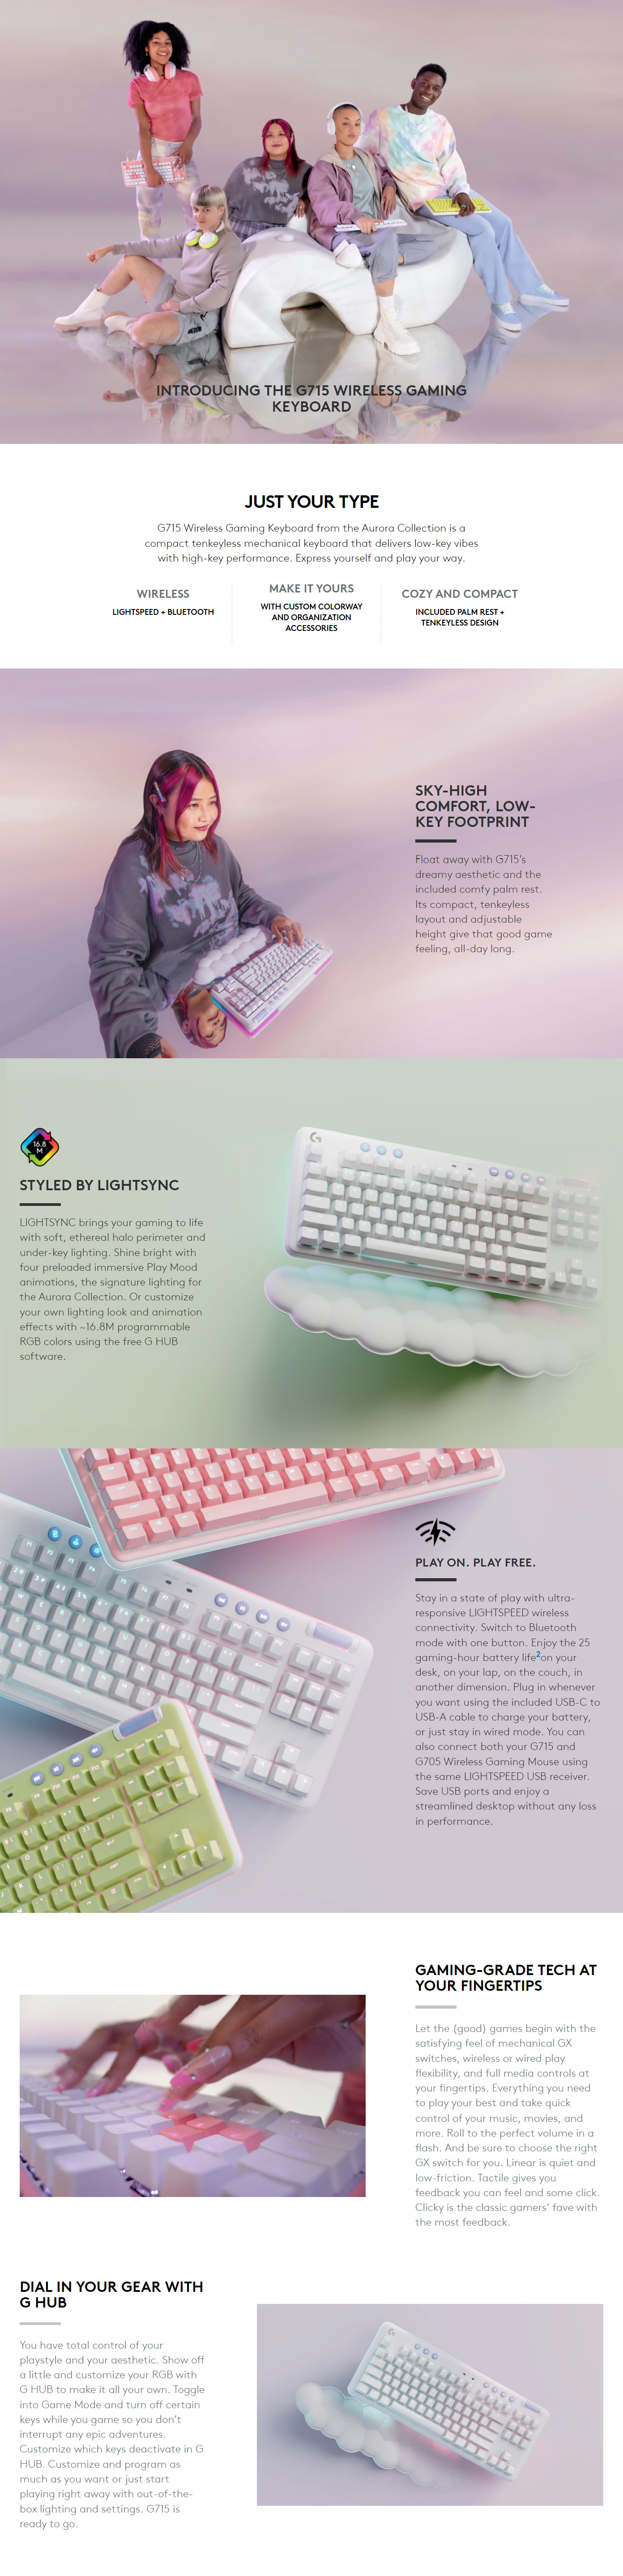 Keyboards-Logitech-G715-Linear-Wireless-Gaming-Keyboard-1